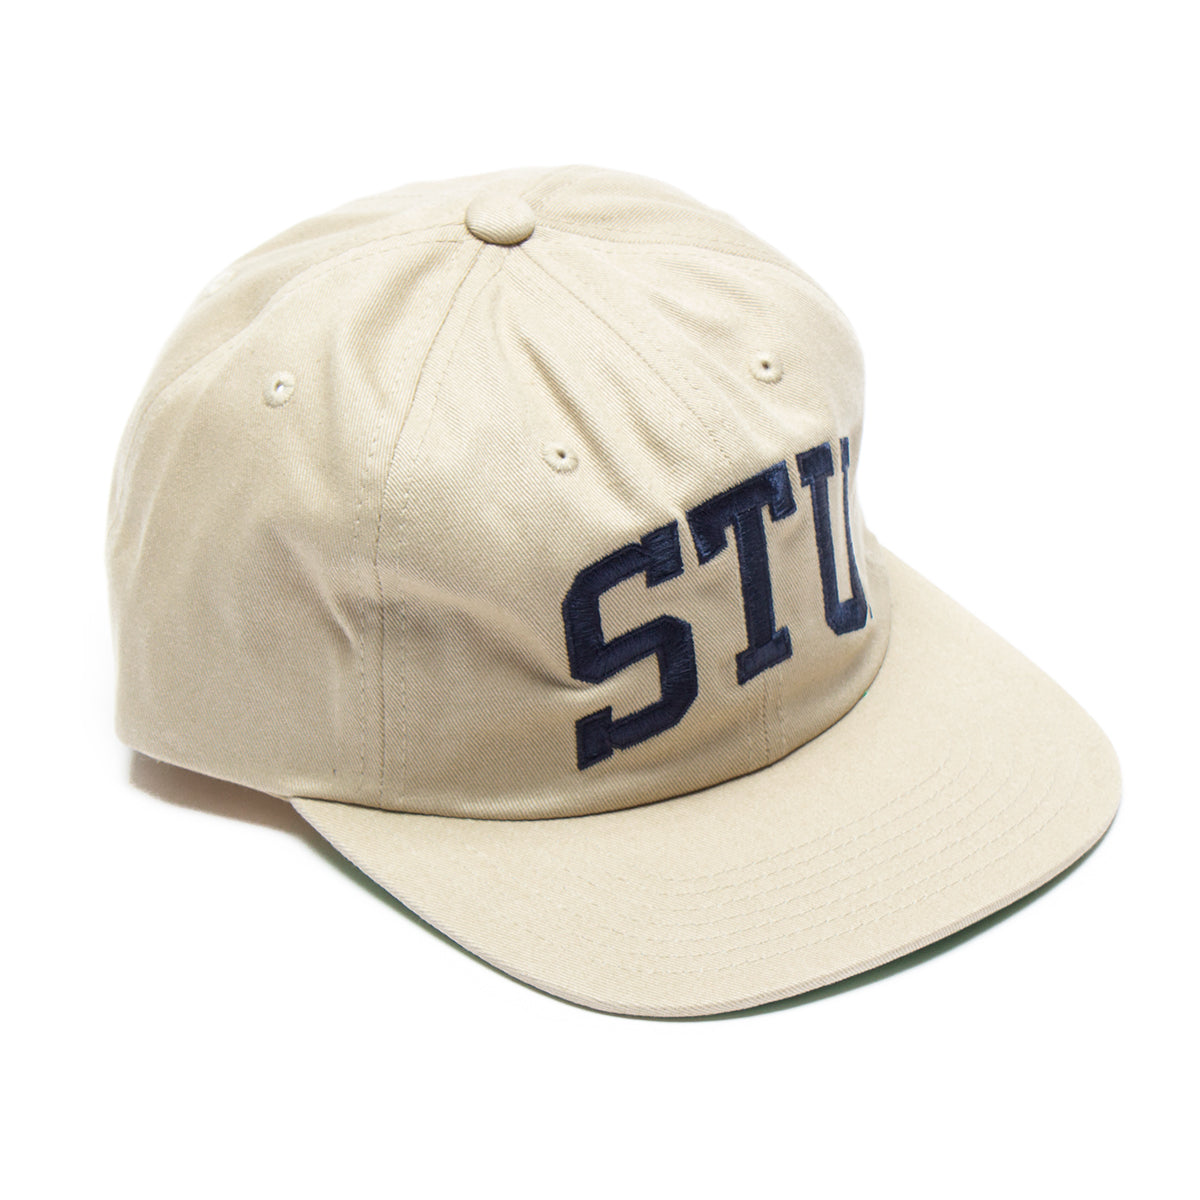 Stu Arch Strapback Cap – Premier